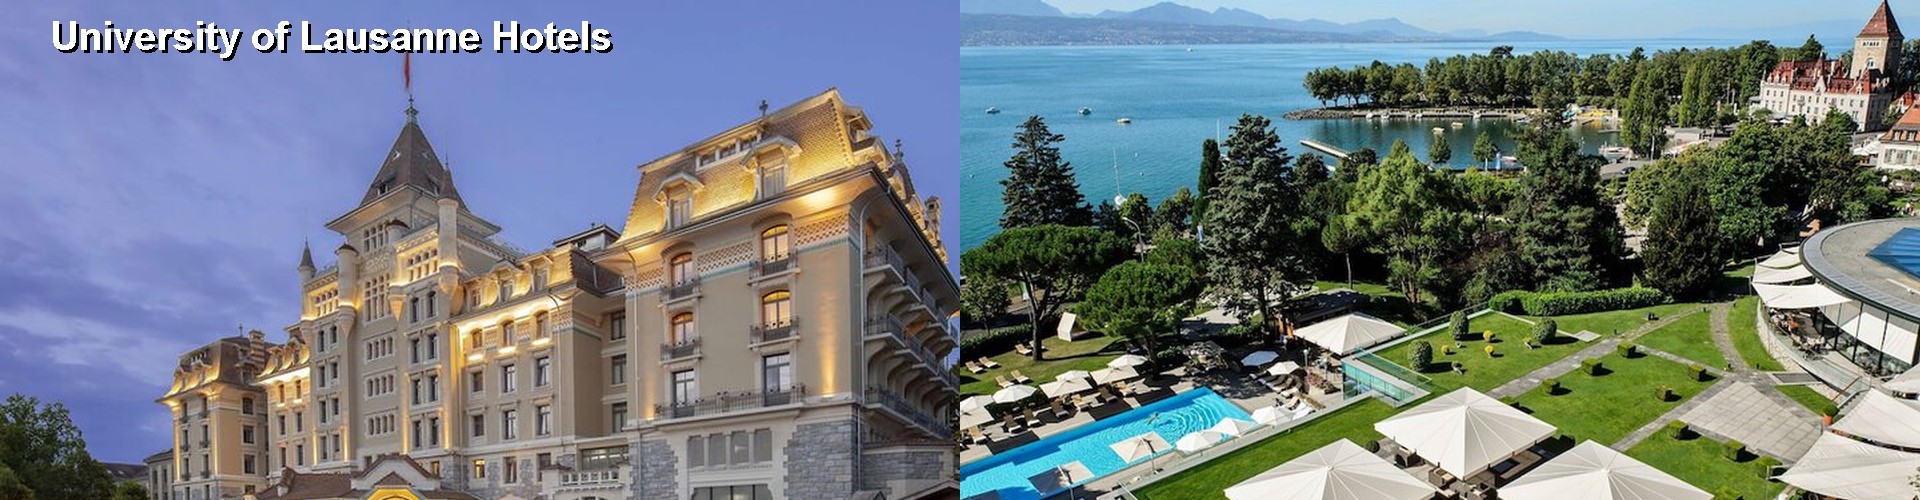 5 Best Hotels near University of Lausanne